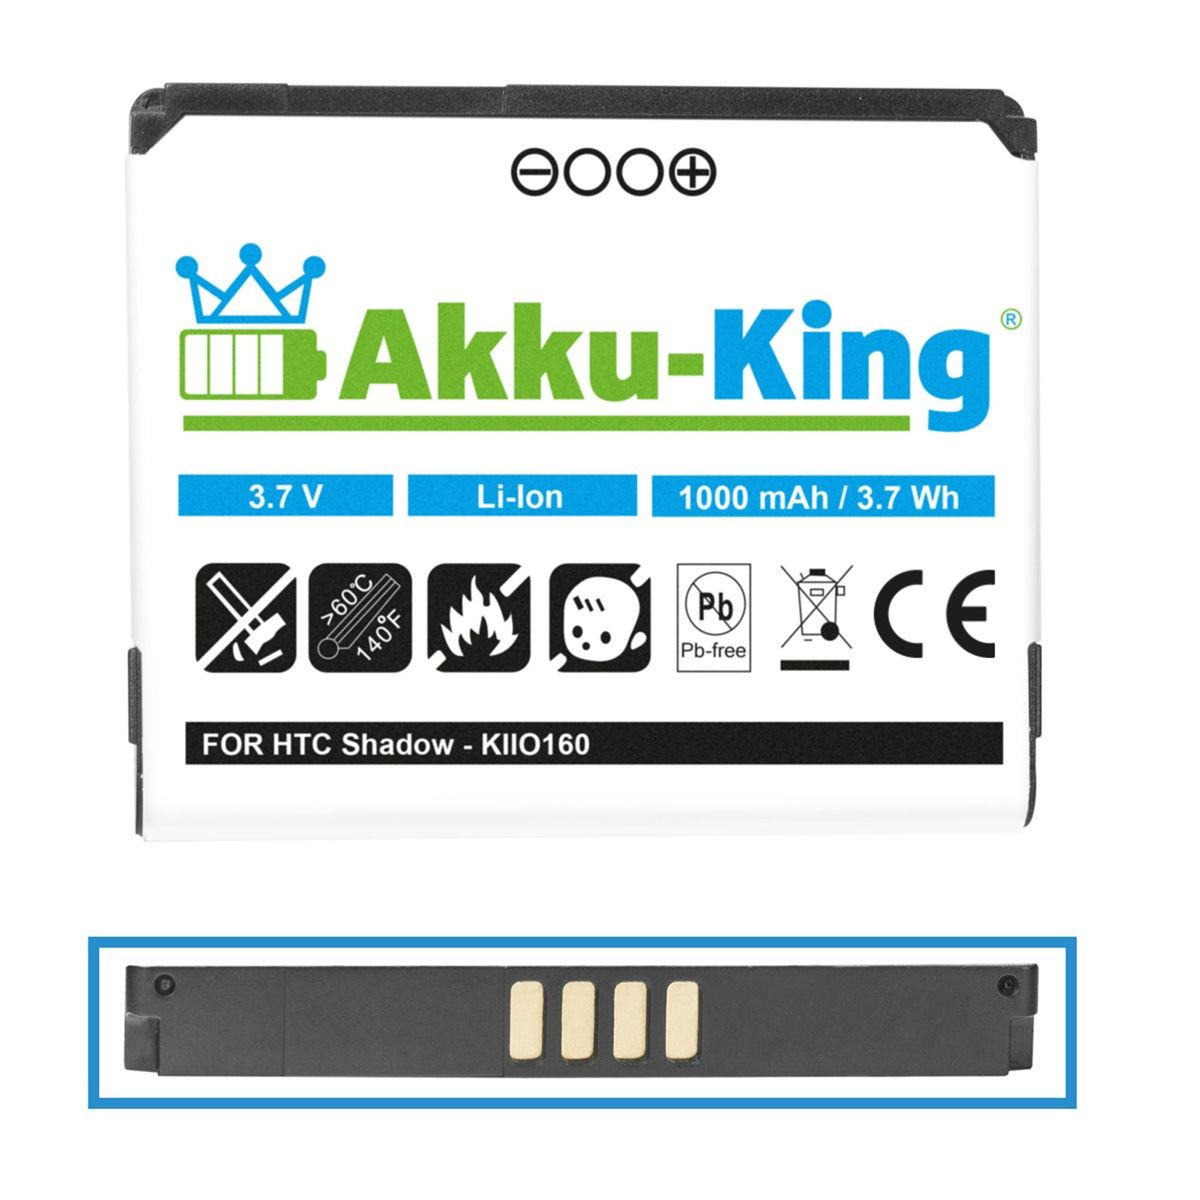 1000mAh kompatibel mit Handy-Akku, 35H00101-03M 3.7 HTC Akku Li-Ion AKKU-KING Volt,